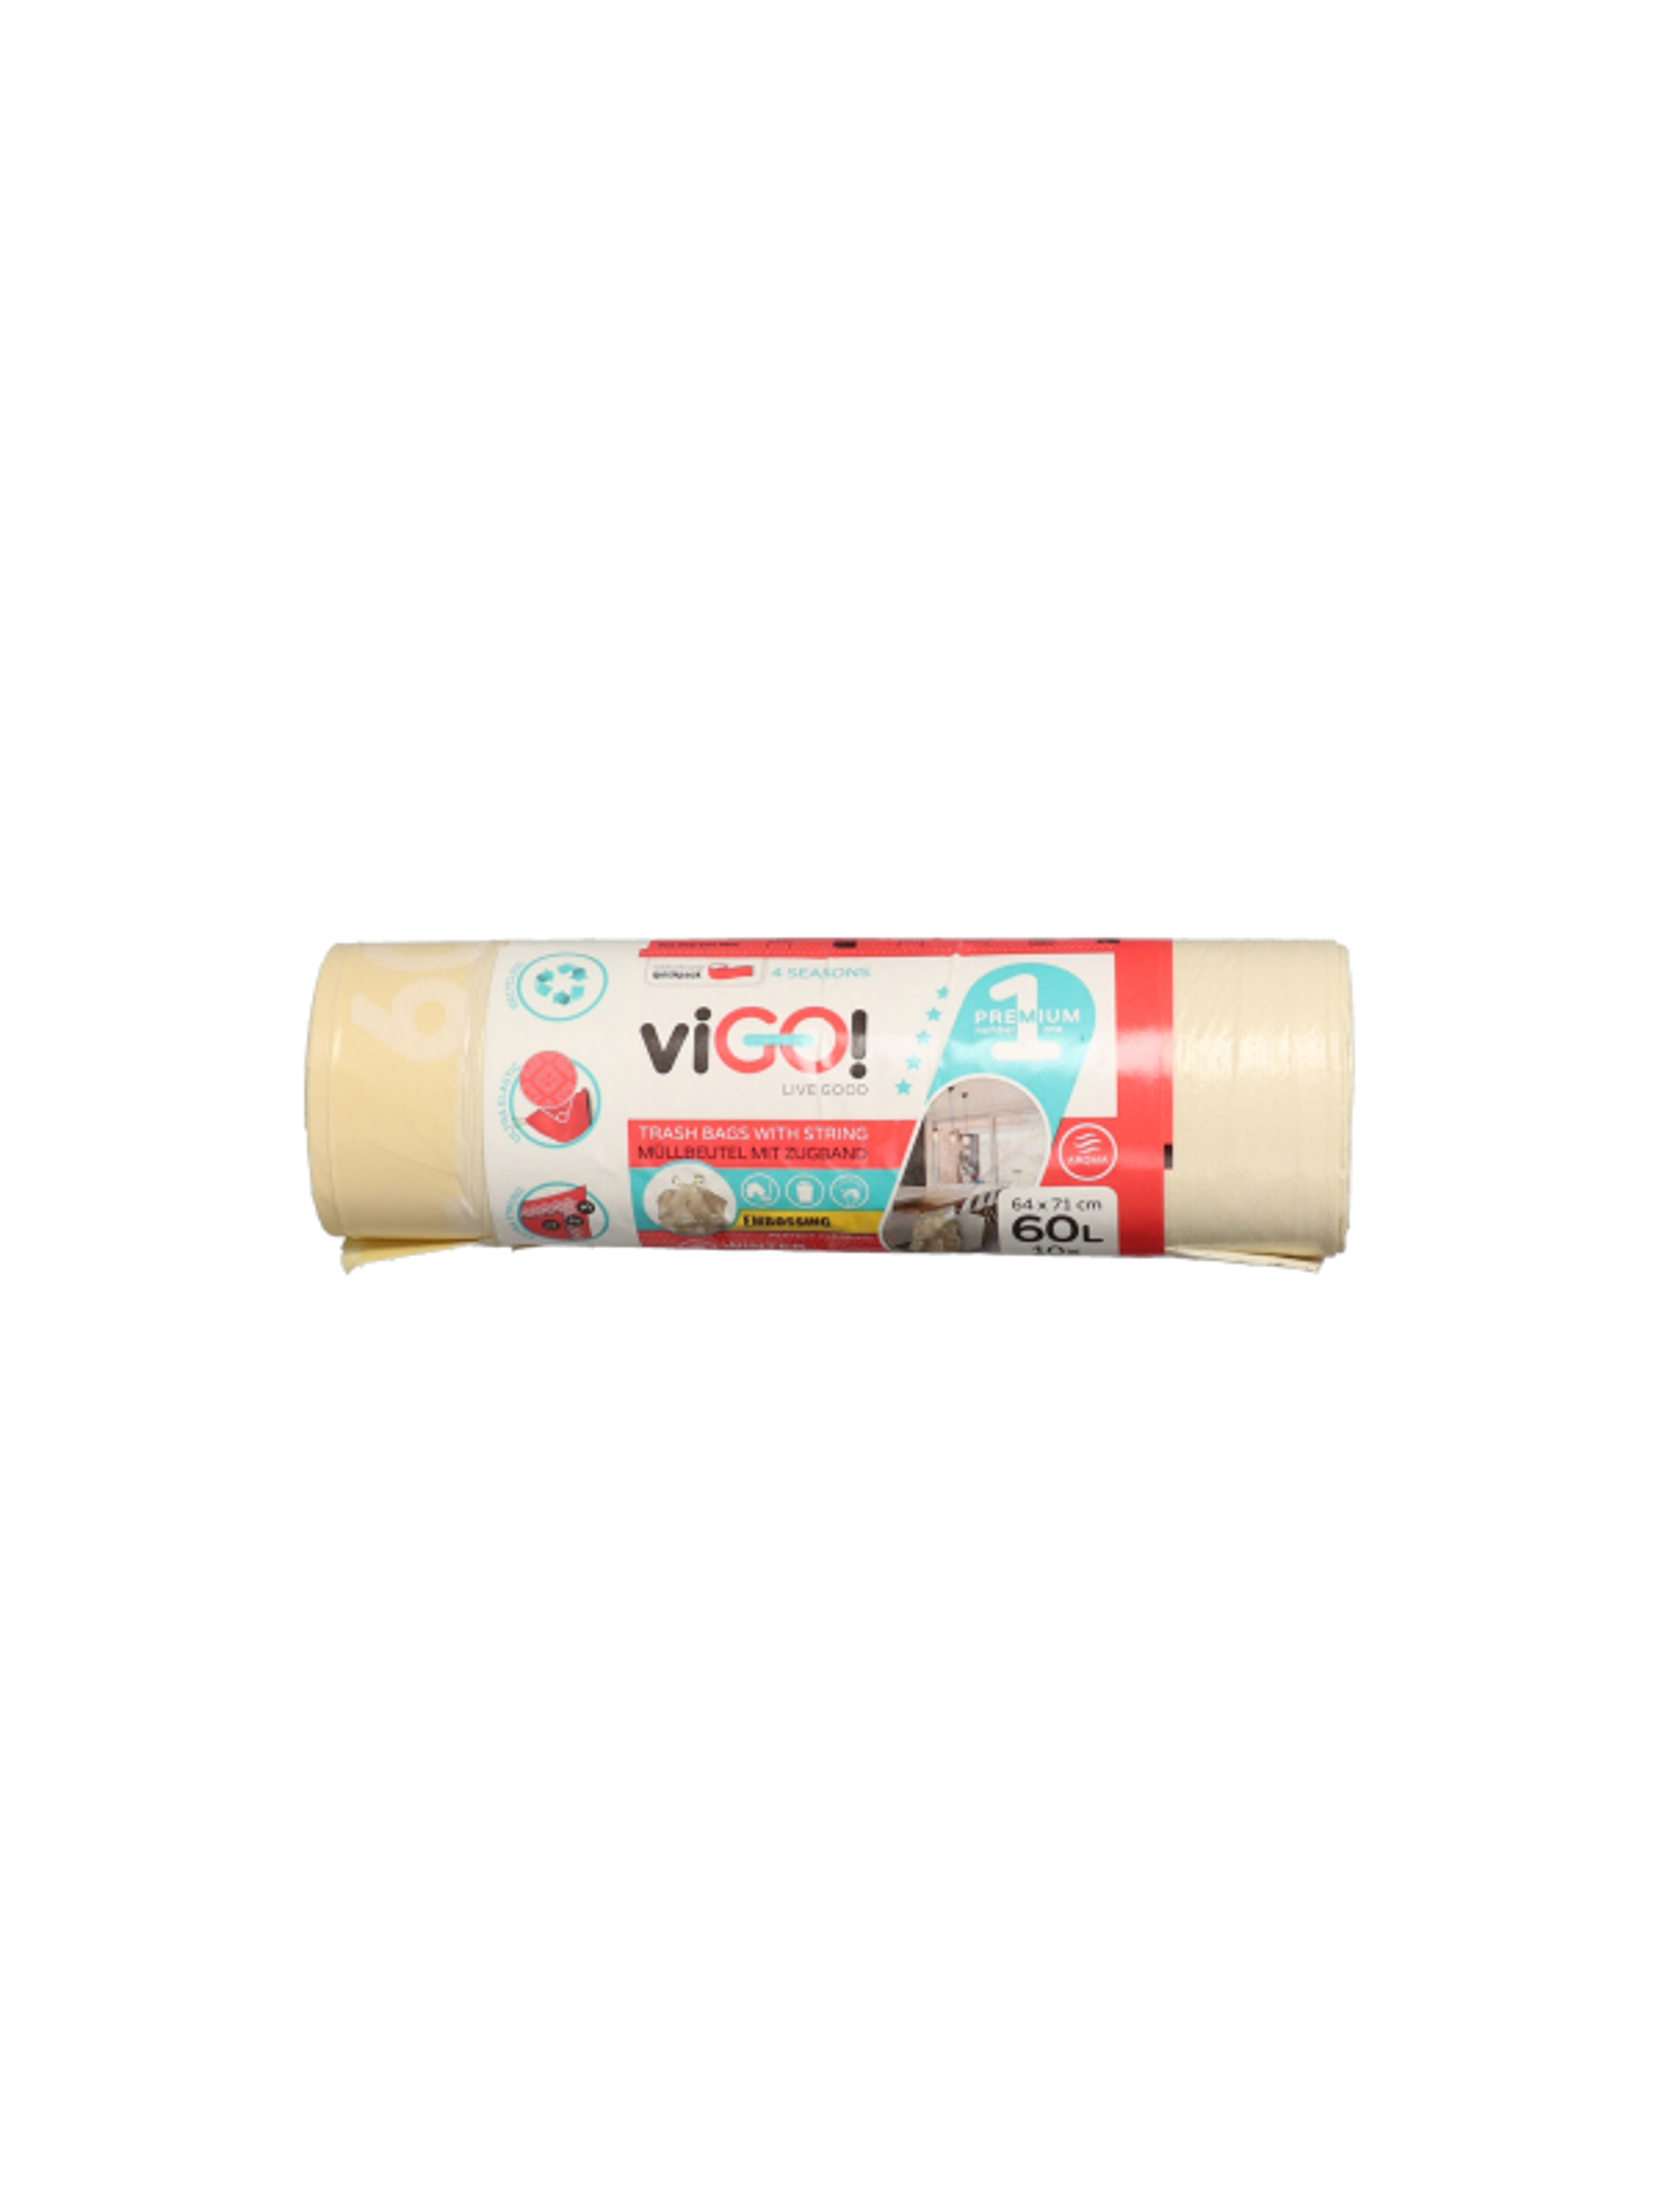 Vigo szemeteszsák,zárószalaggal, vanília illattal, 60 L - 10 db-1